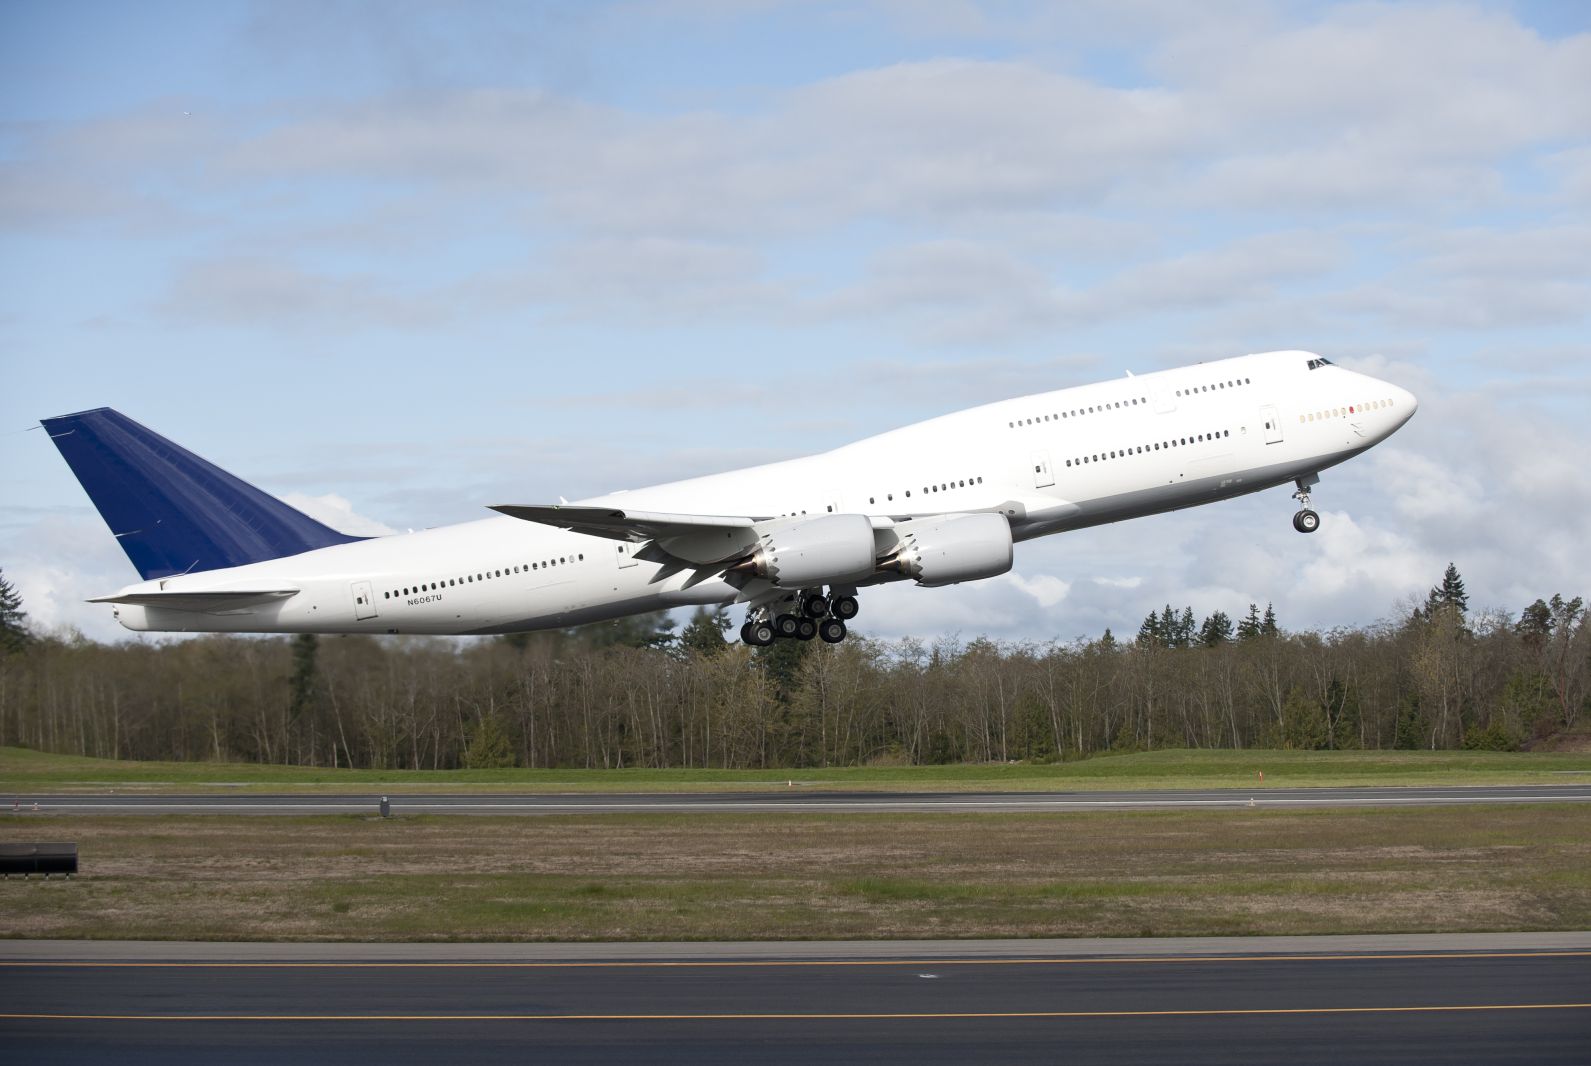 Az új 747-es is impozánsra sikerült, lehet-e még hosszabb a törzse? Ez nyilván nemcsak technikai kérdés...